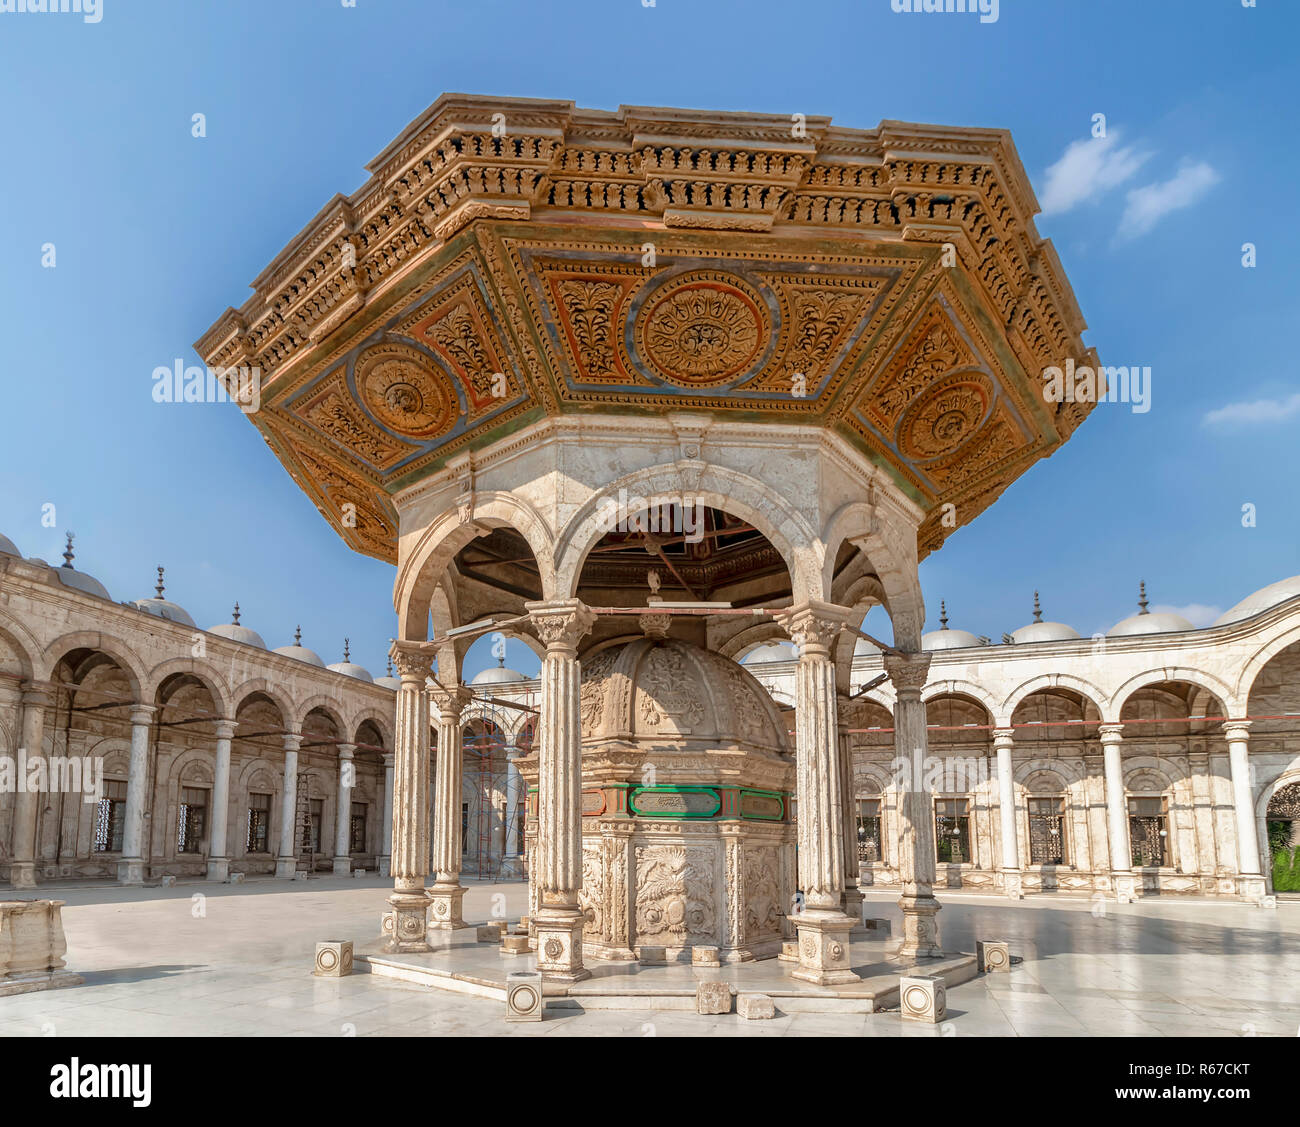 Il cortile esterno della Grande Moschea di Muhammad Ali Pasha o la moschea di alabastro con Wudu o rubinetti di acqua (rubinetto), è la procedura islamica per washin Foto Stock